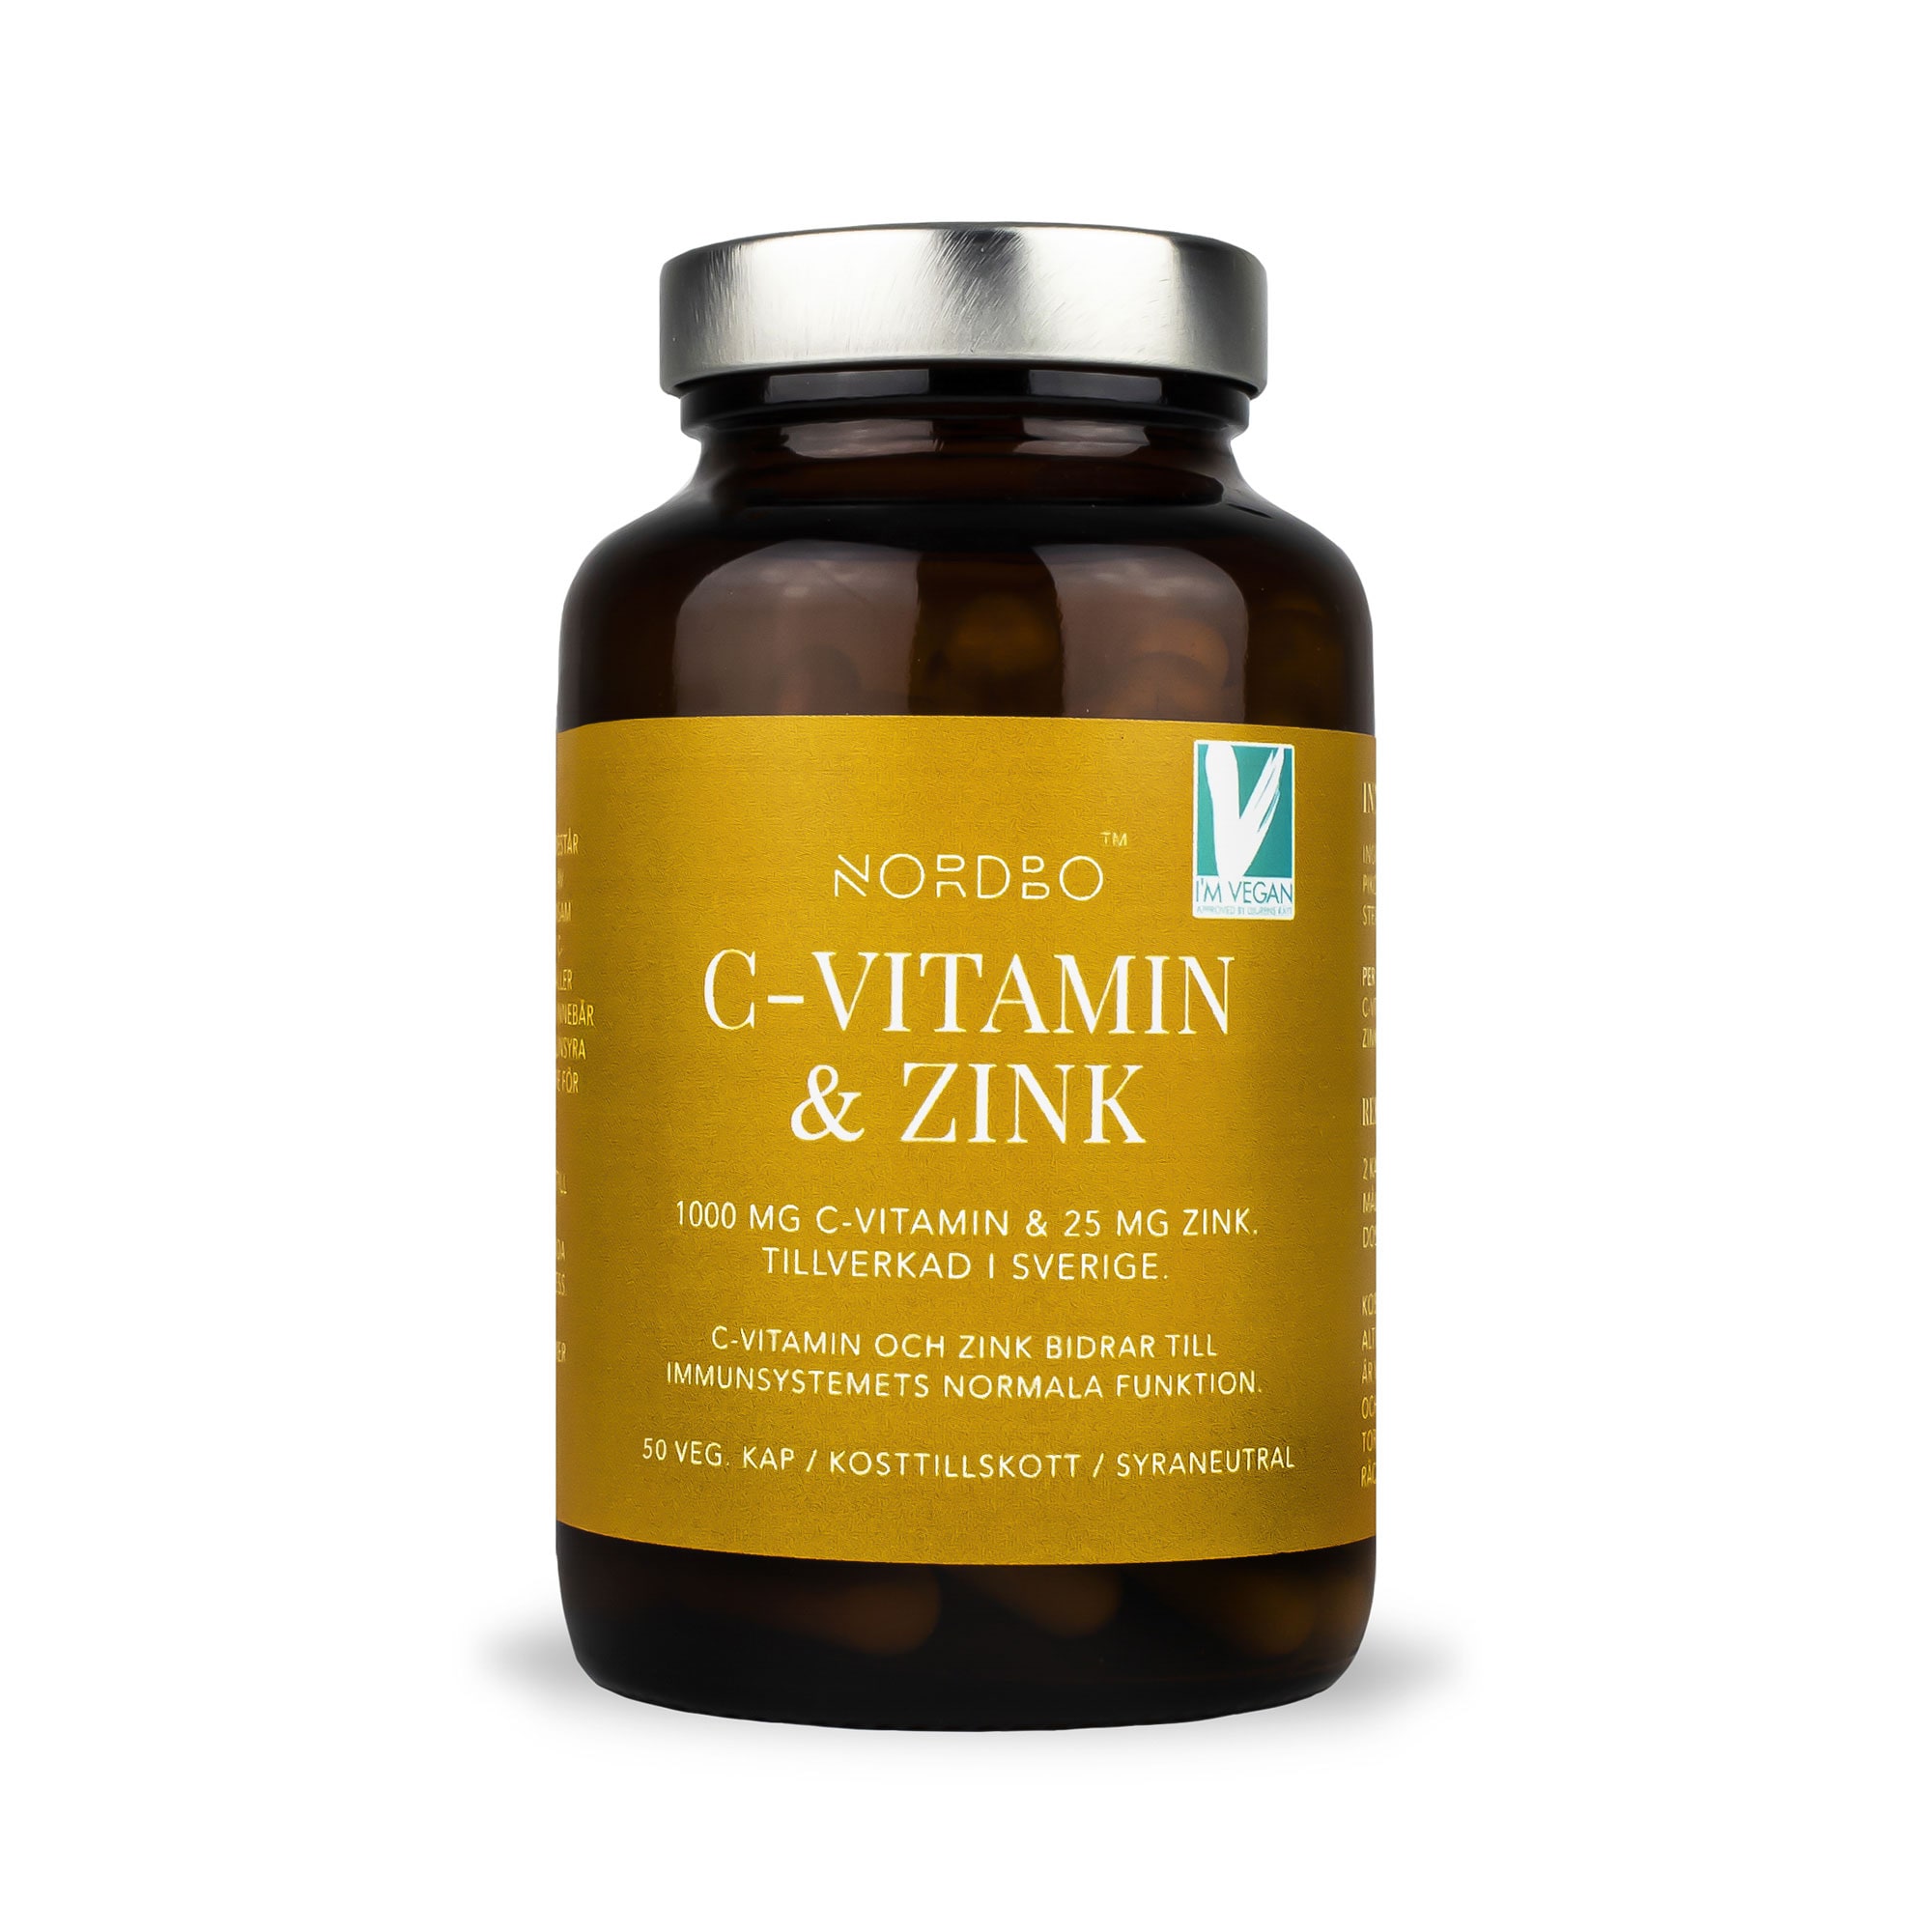 C-Vitamin & Zink